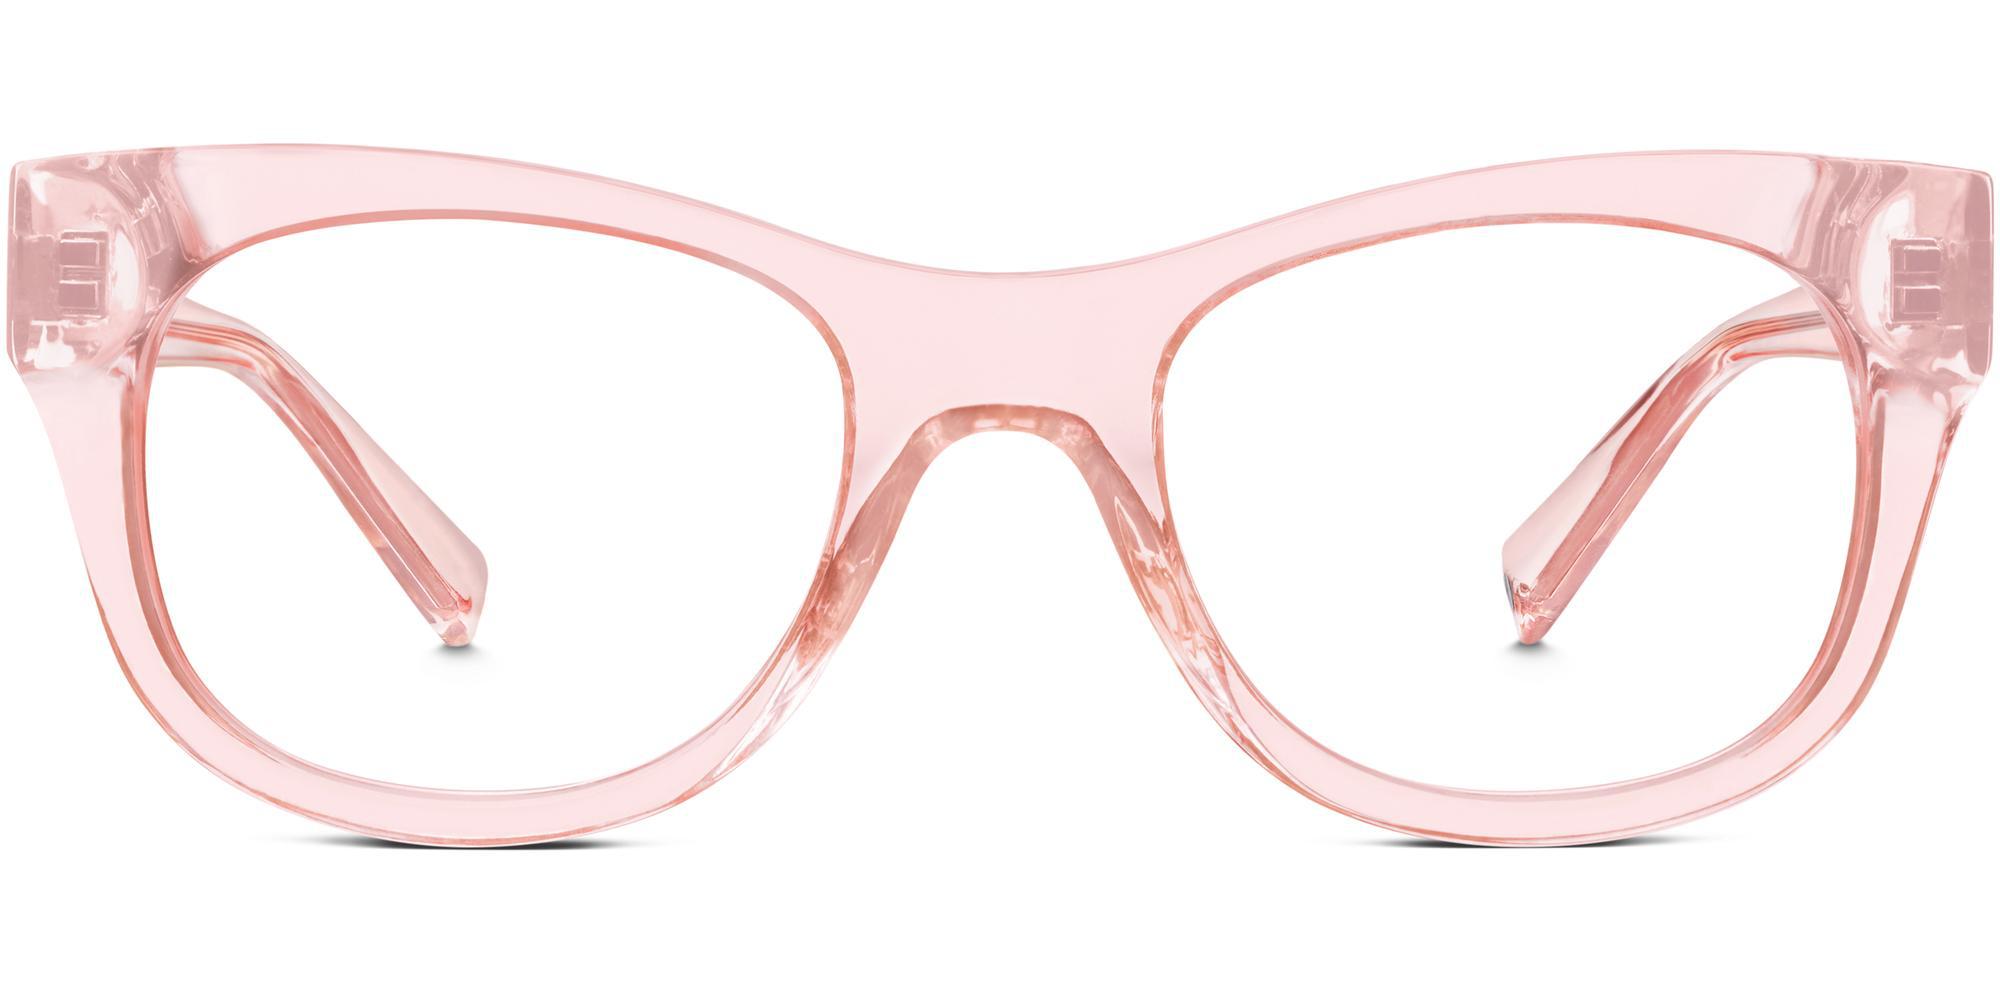 Tijn очки. Очки розовой пантеры. Warby Parker 2705122 145. Керби Паркерс очки солнцезащитные. Купить очки в ижевске